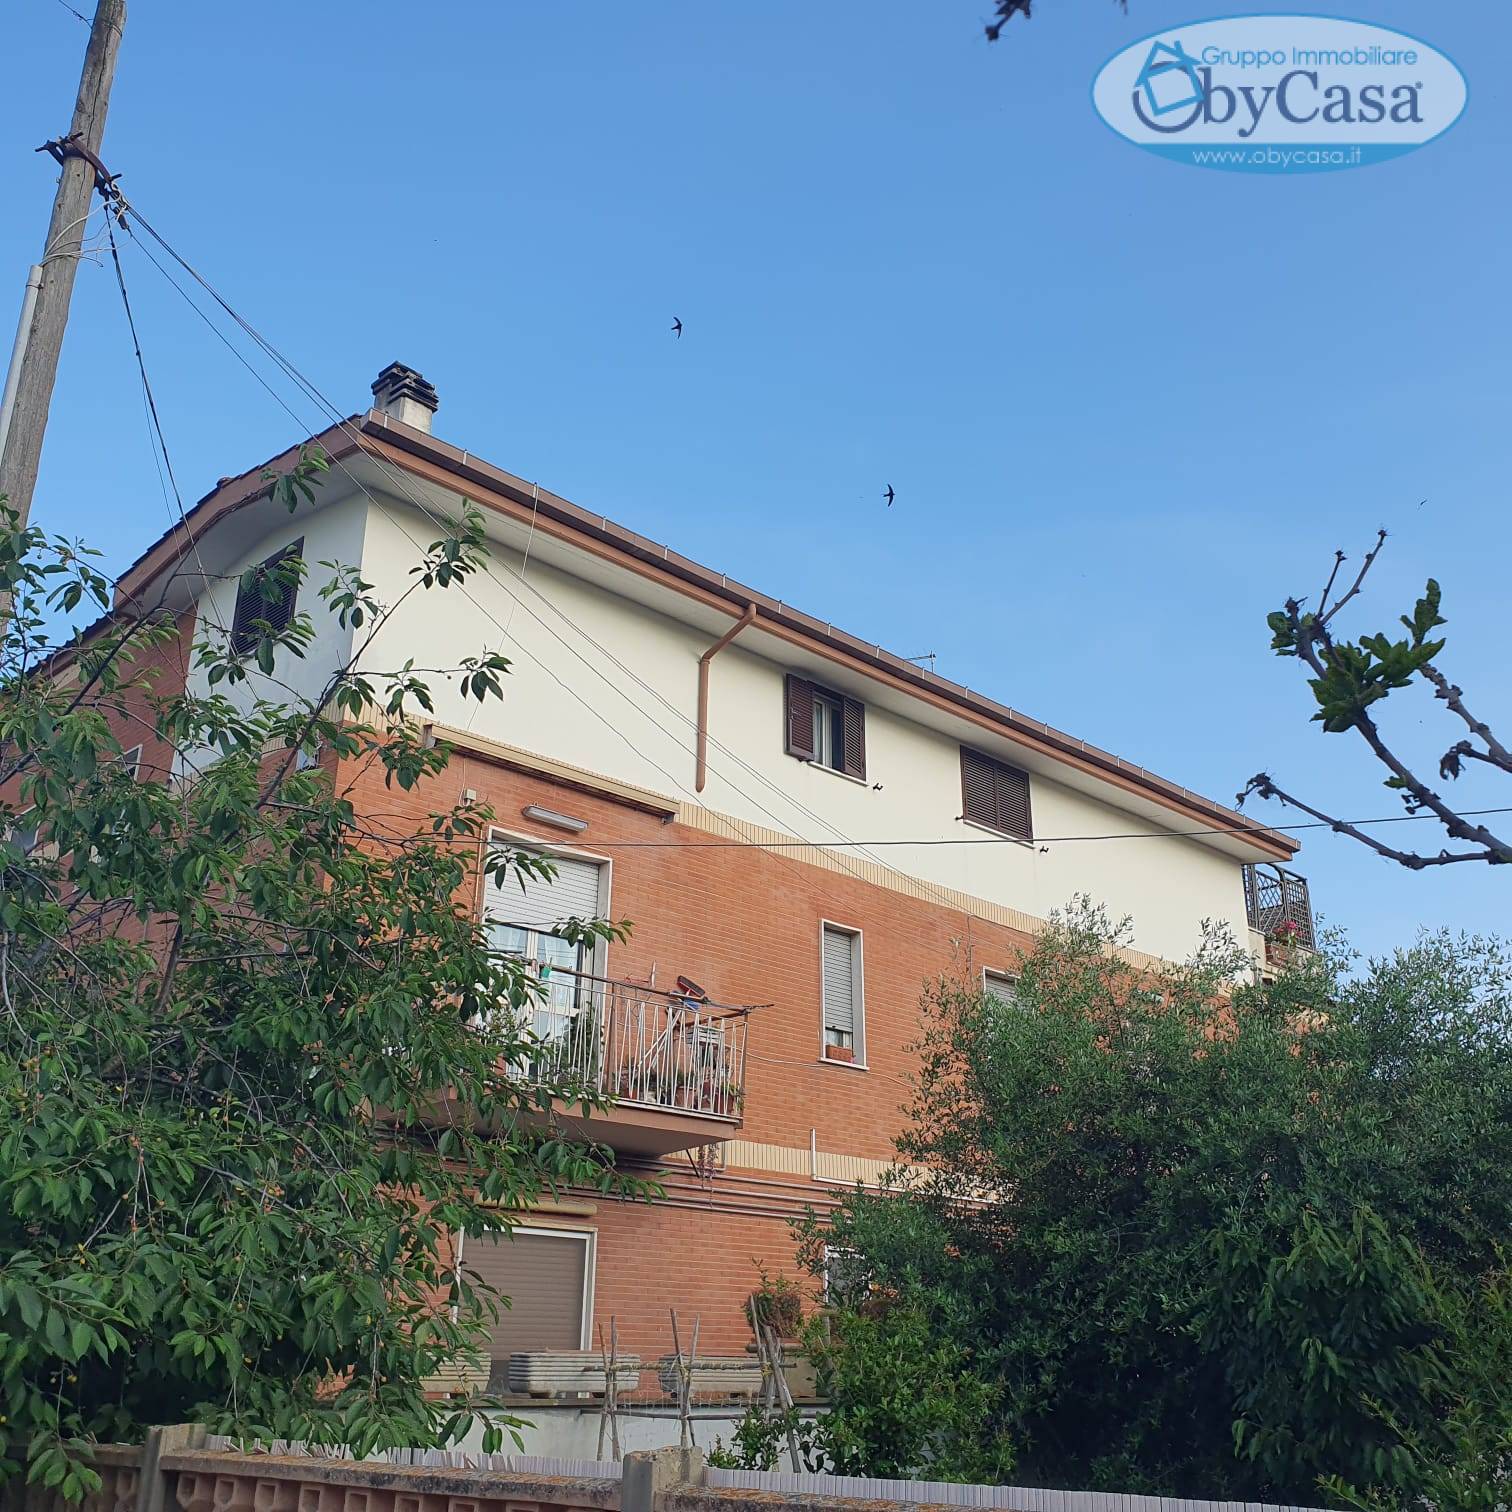 Appartamento in vendita a Ladispoli, 3 locali, prezzo € 155.000 | CambioCasa.it